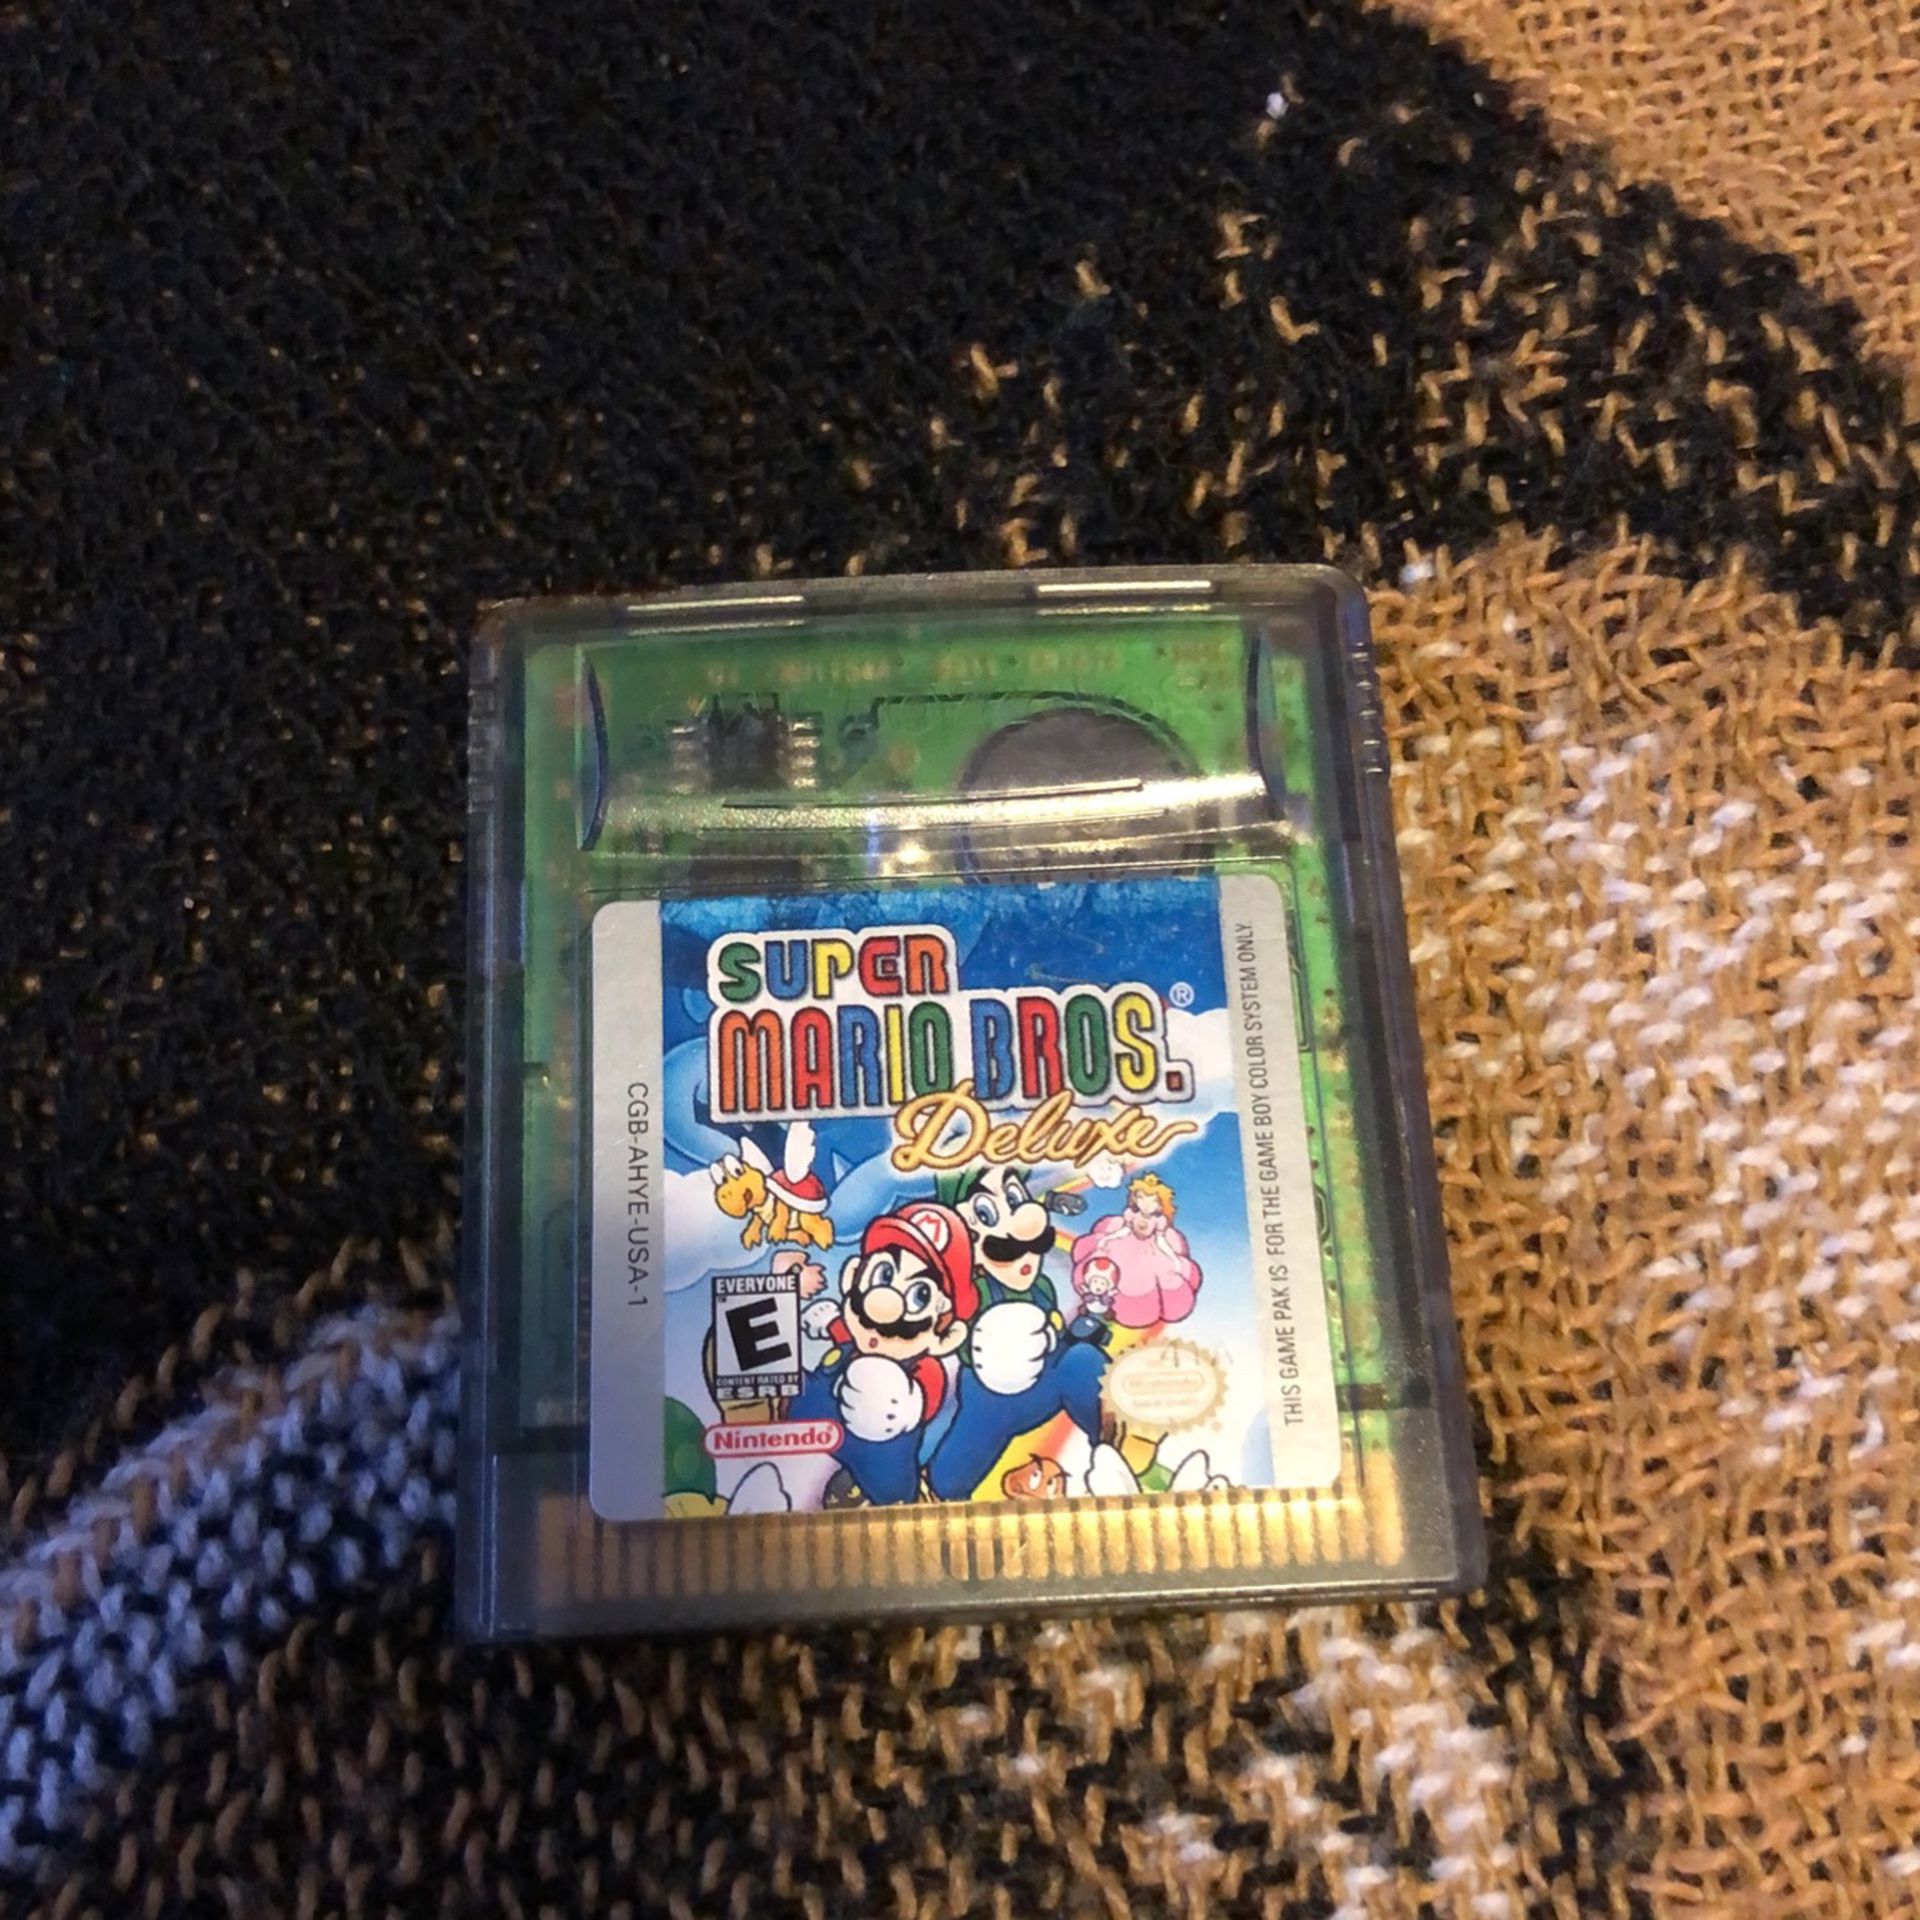 Nintendo Gameboy Color Super Mario Bros Deluxe